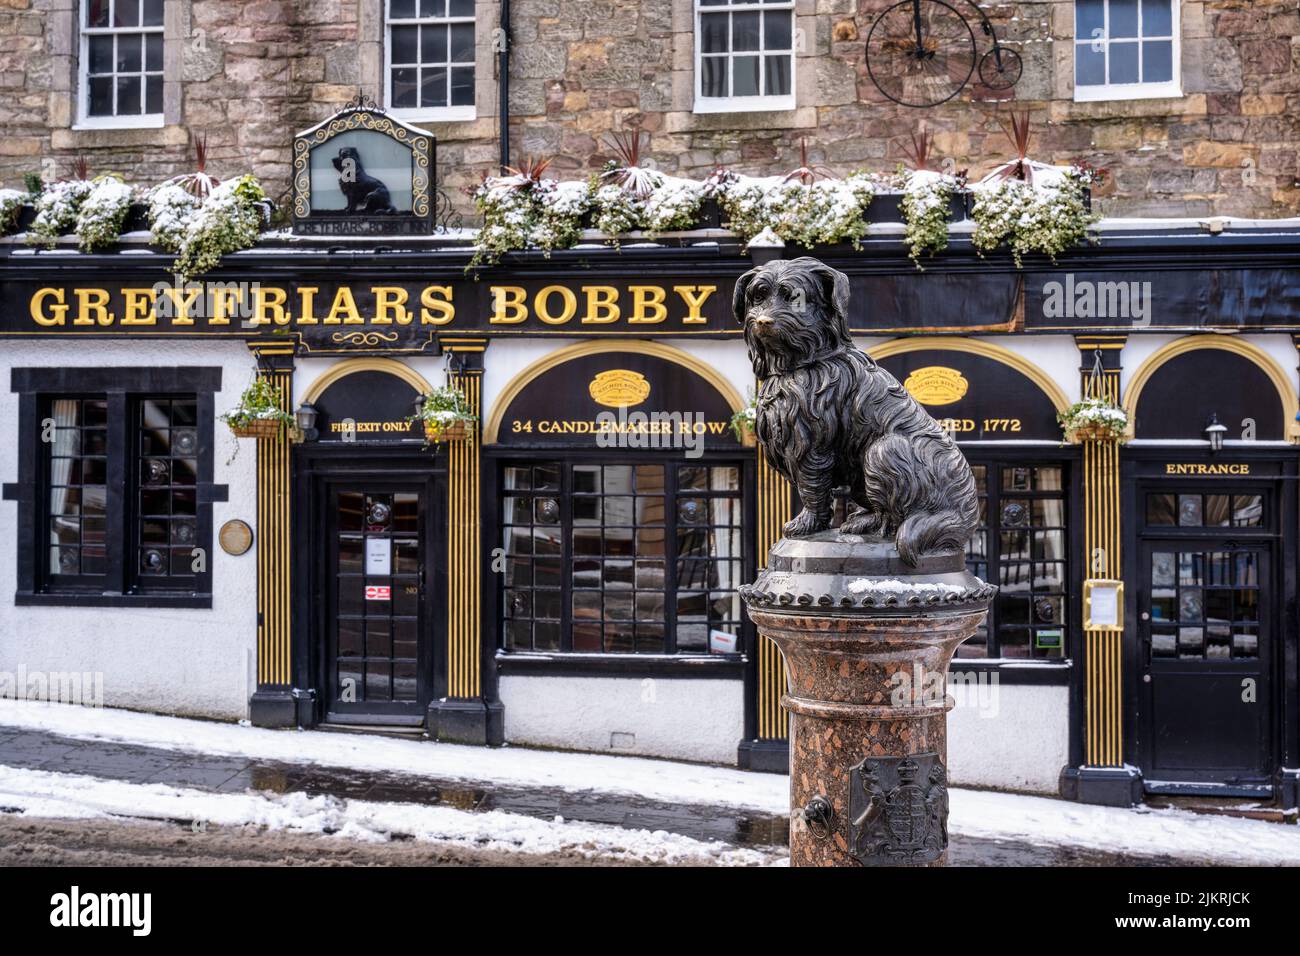 Greyfriars Bobby Public House in snow, Candlemaker Row, Edimburgo, Escocia, Reino Unido Foto de stock